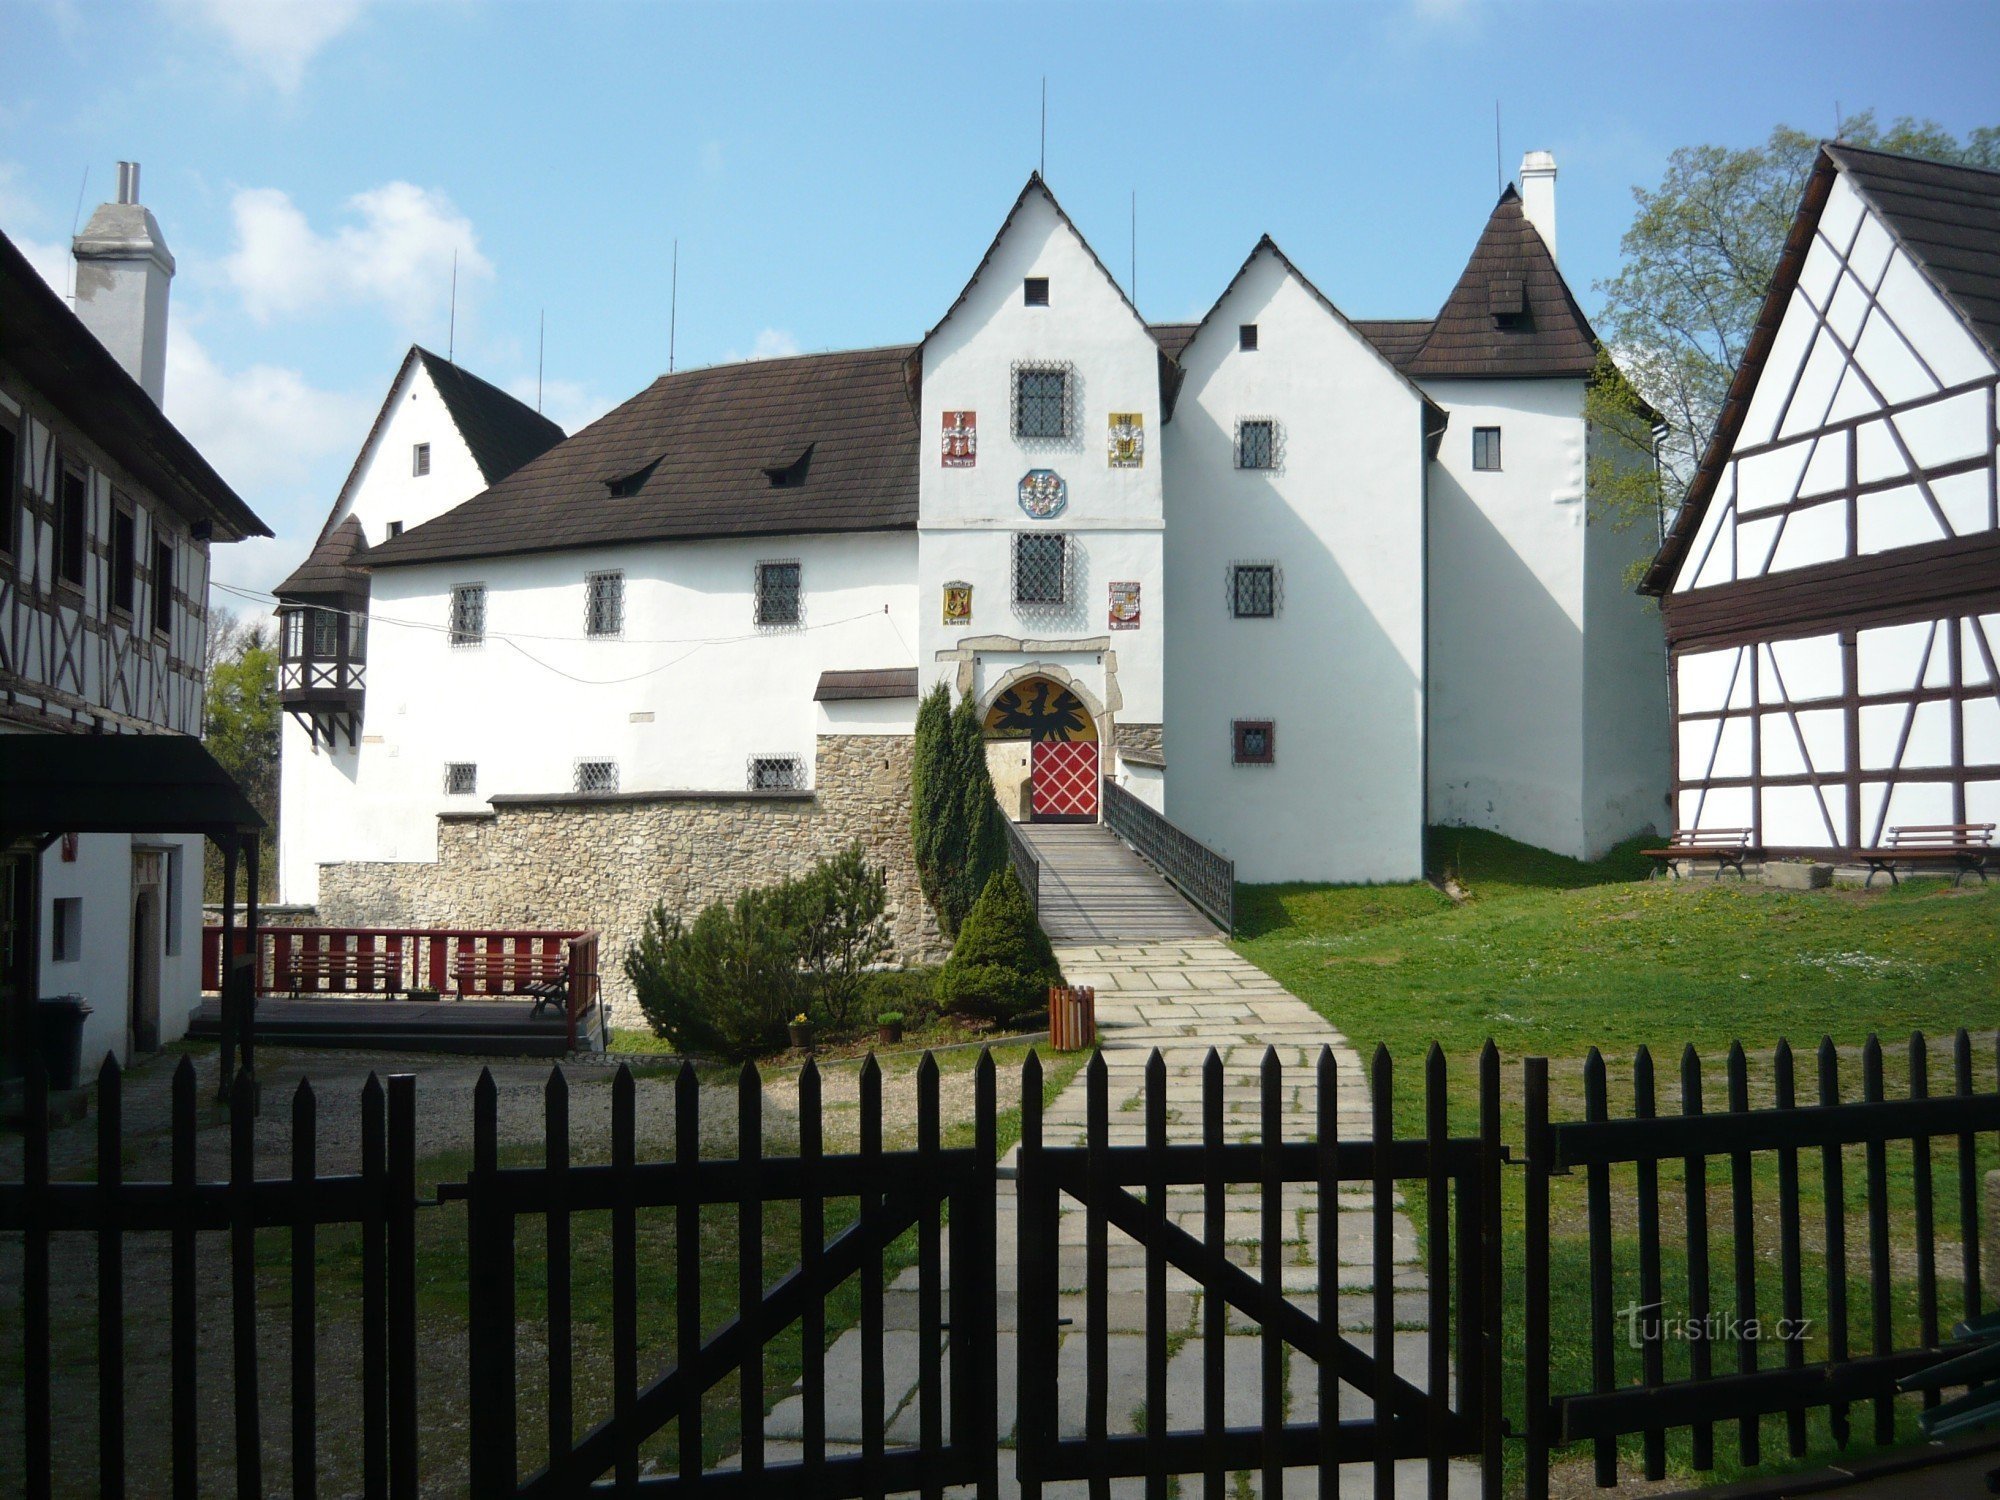 Trilha educativa Arredores do Castelo de Seeberg (Ostroh)